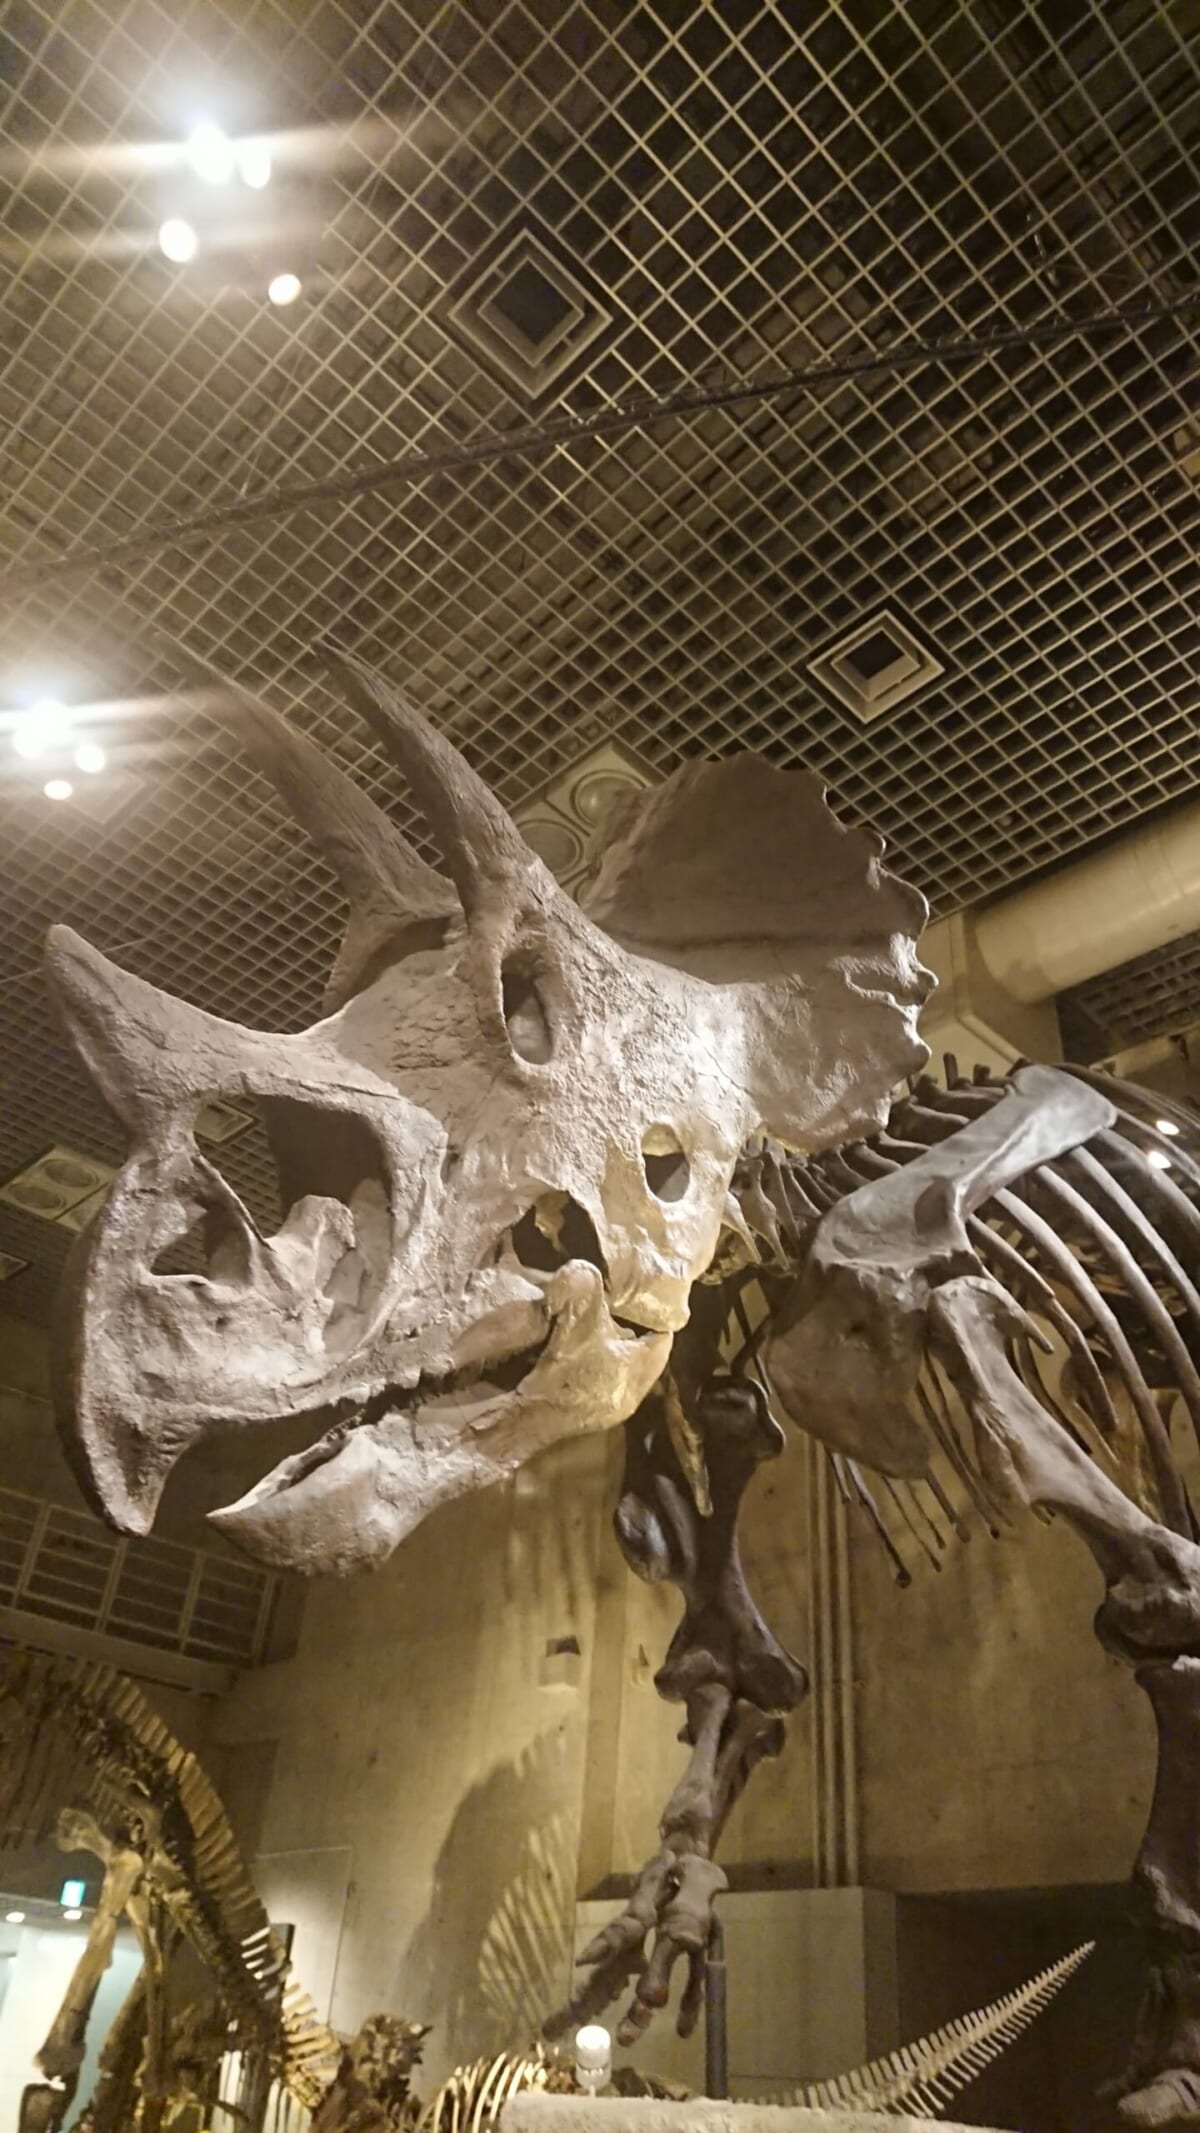 骨を見るシリーズその３。「恐竜の骨も。周飾頭類は、骨になっても可愛いんですよね」